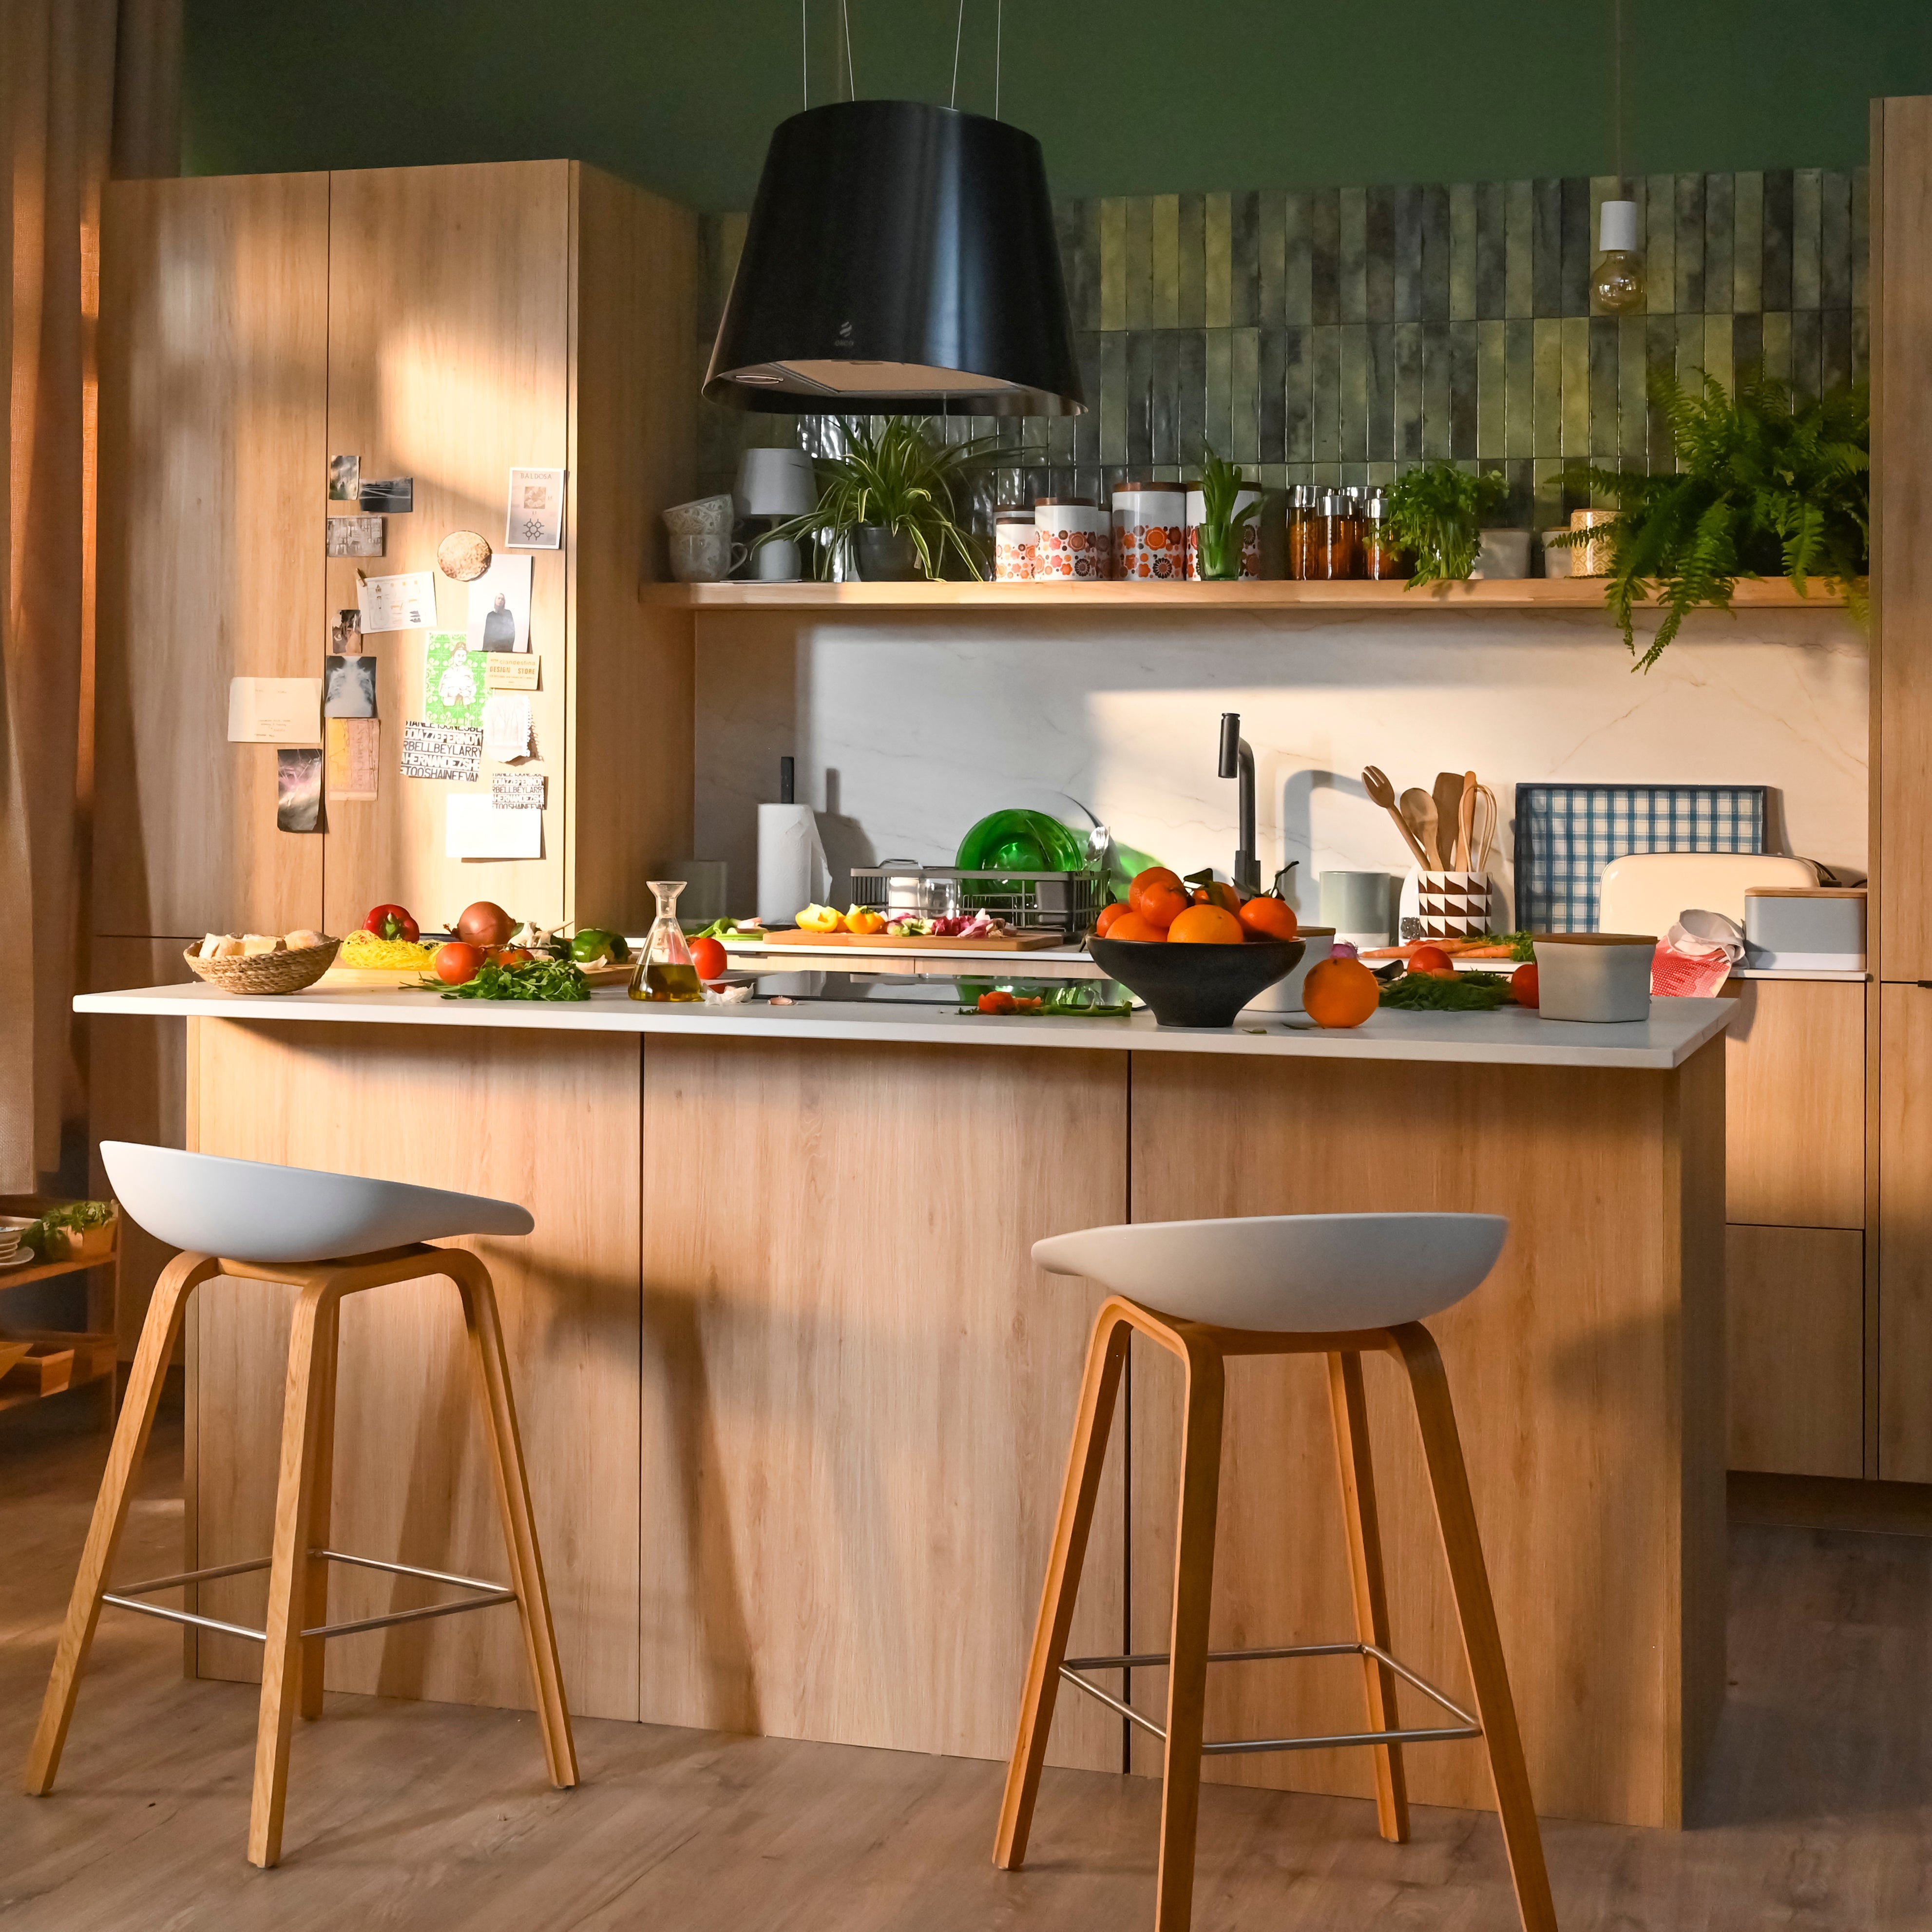 Cocinas Leroy Merlin: selección de muebles y accesorios  Muebles de cocina,  Encimeras de cocina, Encimeras de madera cocina